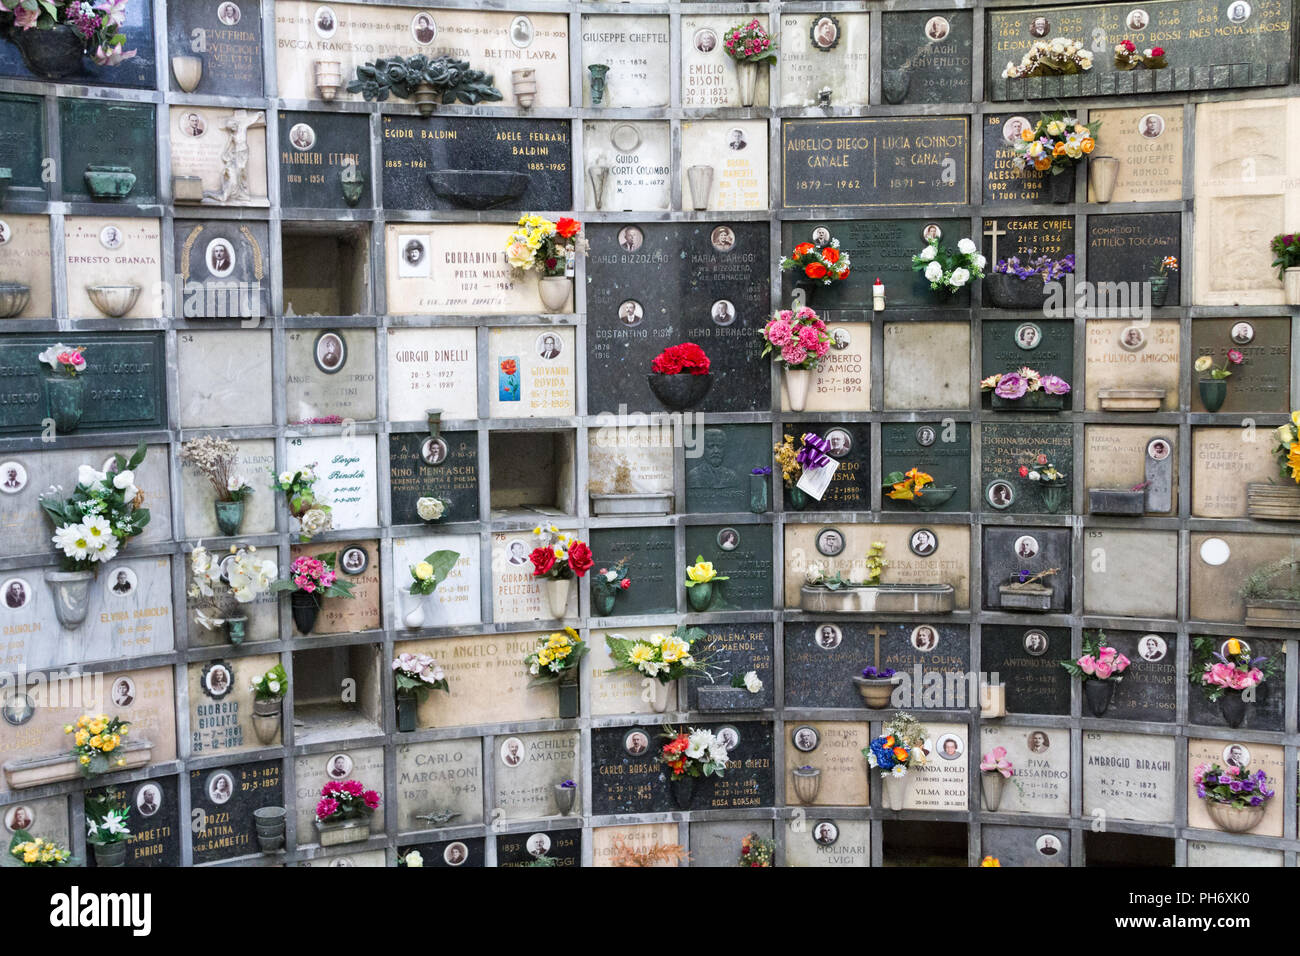 Milán, Italia. 2018/2/8. Un columbario con urnas cinerary (con cenizas humanas) en el Cimitero Monumentale (Cementerio de 'Monumental') en Milán, Italia. Foto de stock